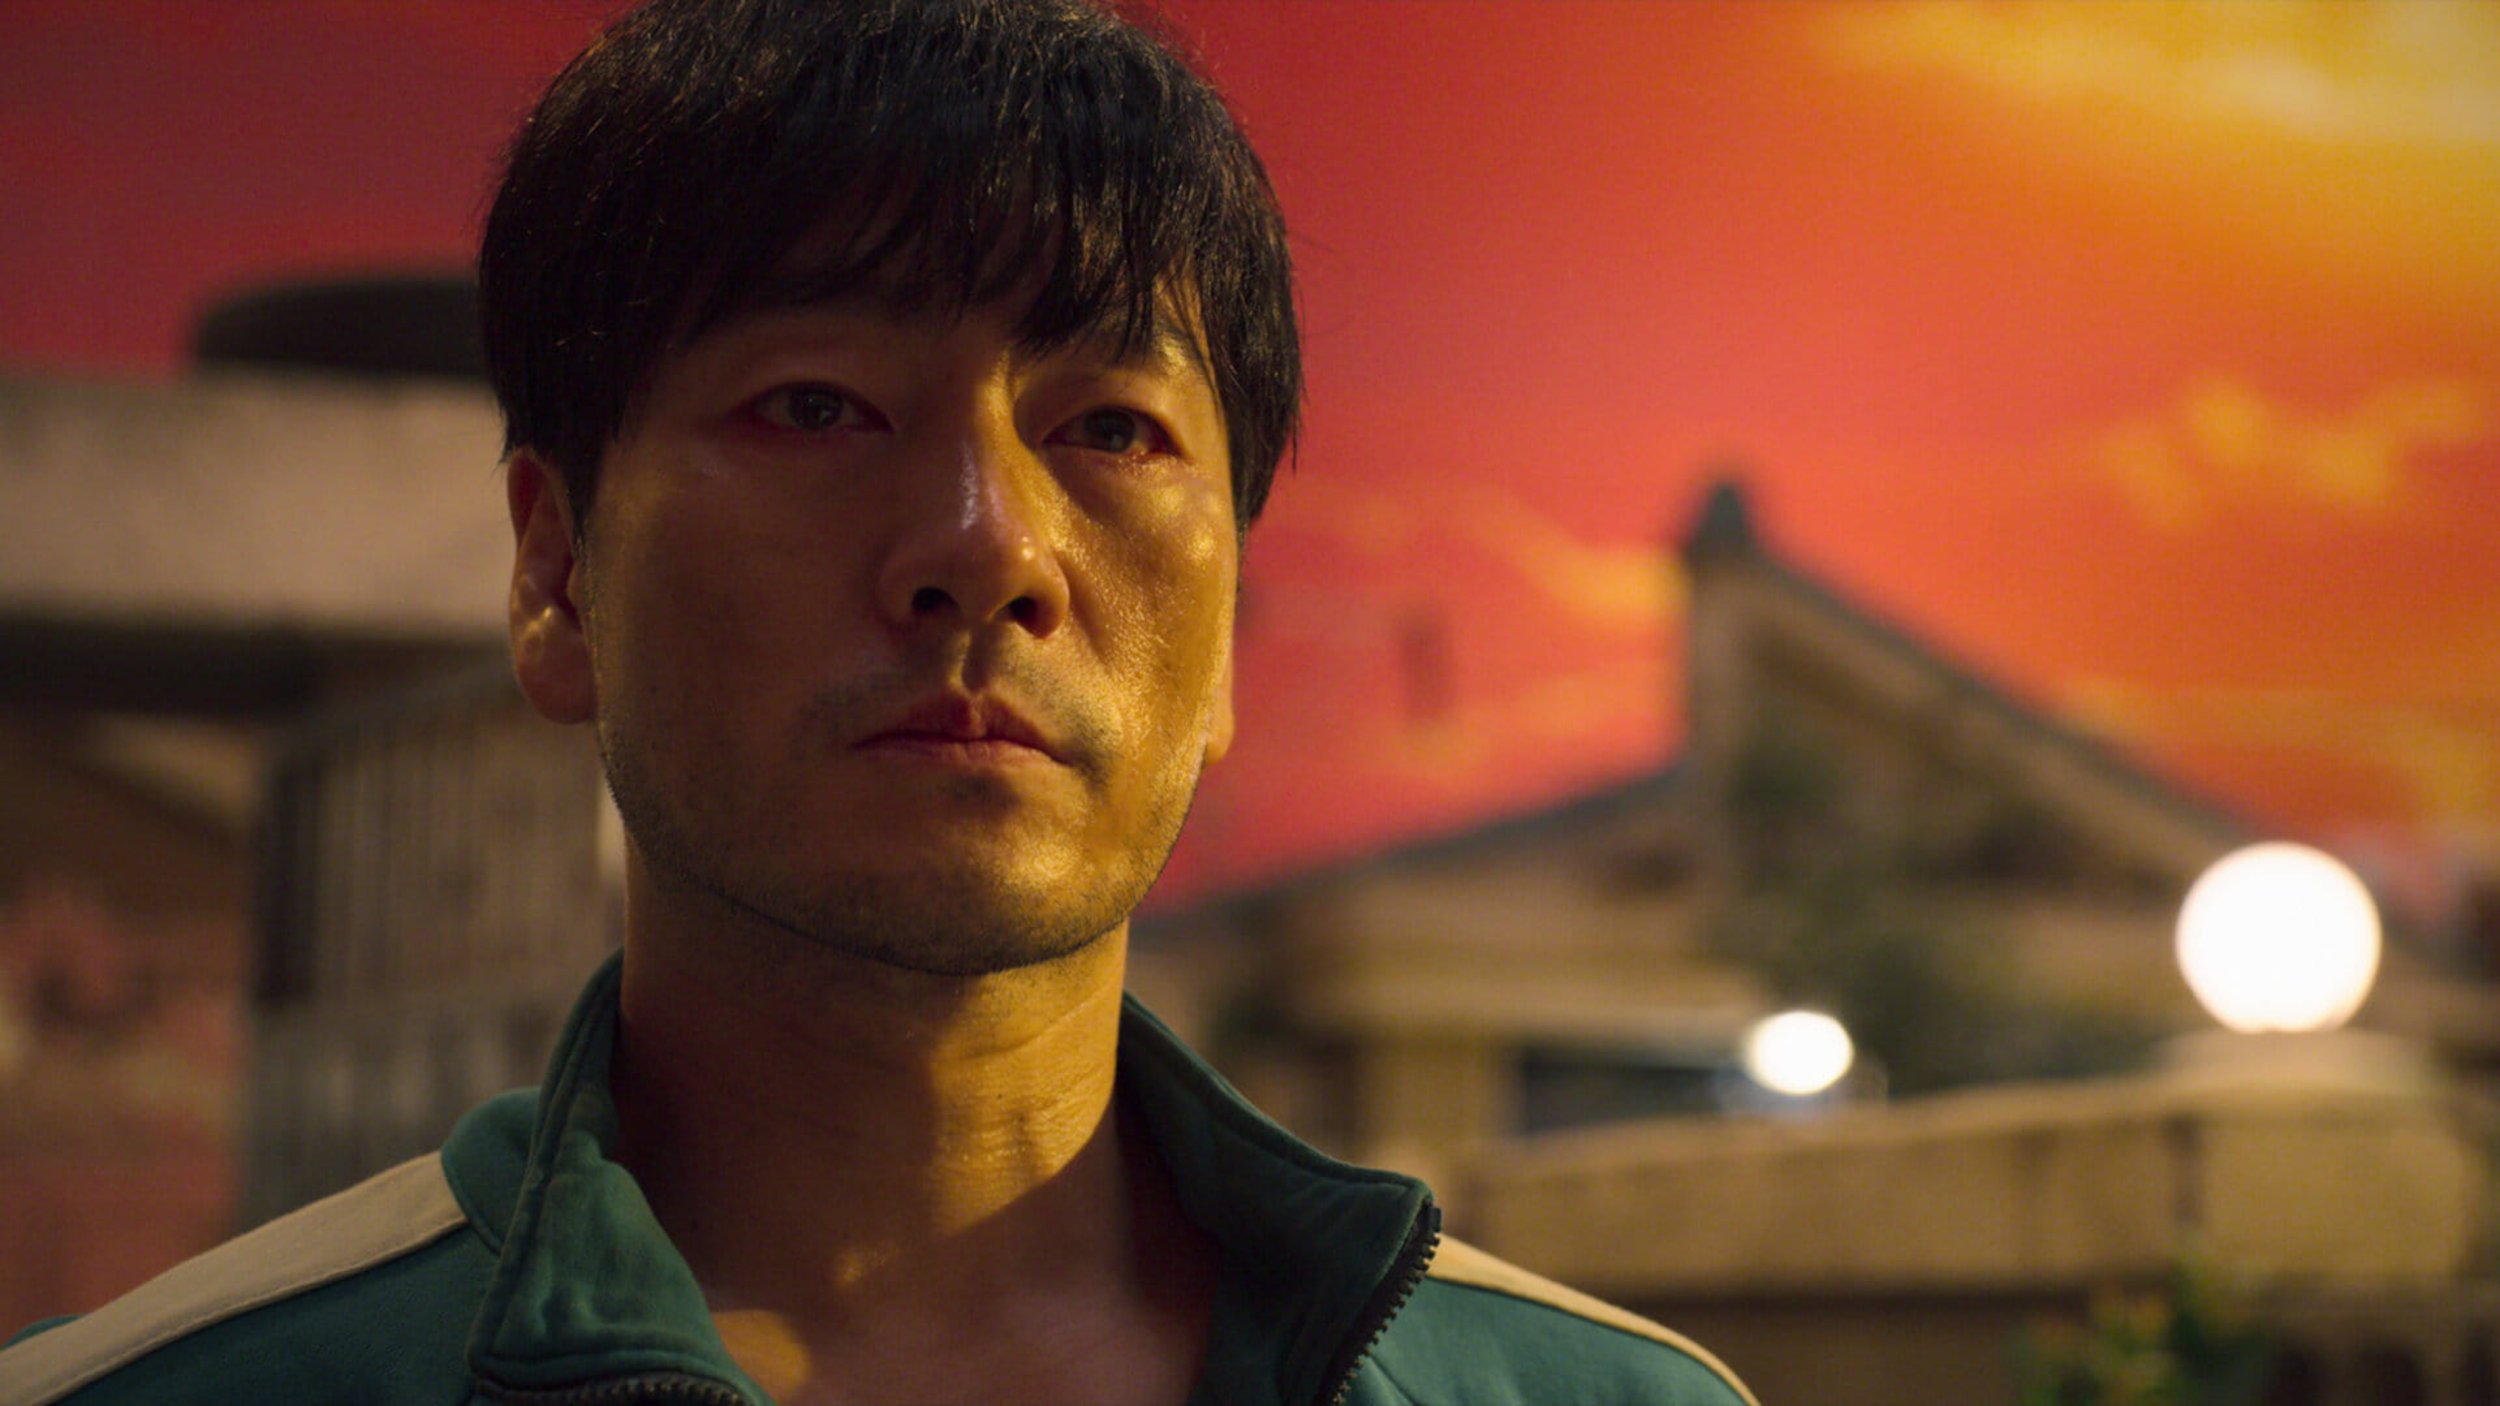 Série sul-coreana 'Round 6', da Netflix, é sucesso mundial